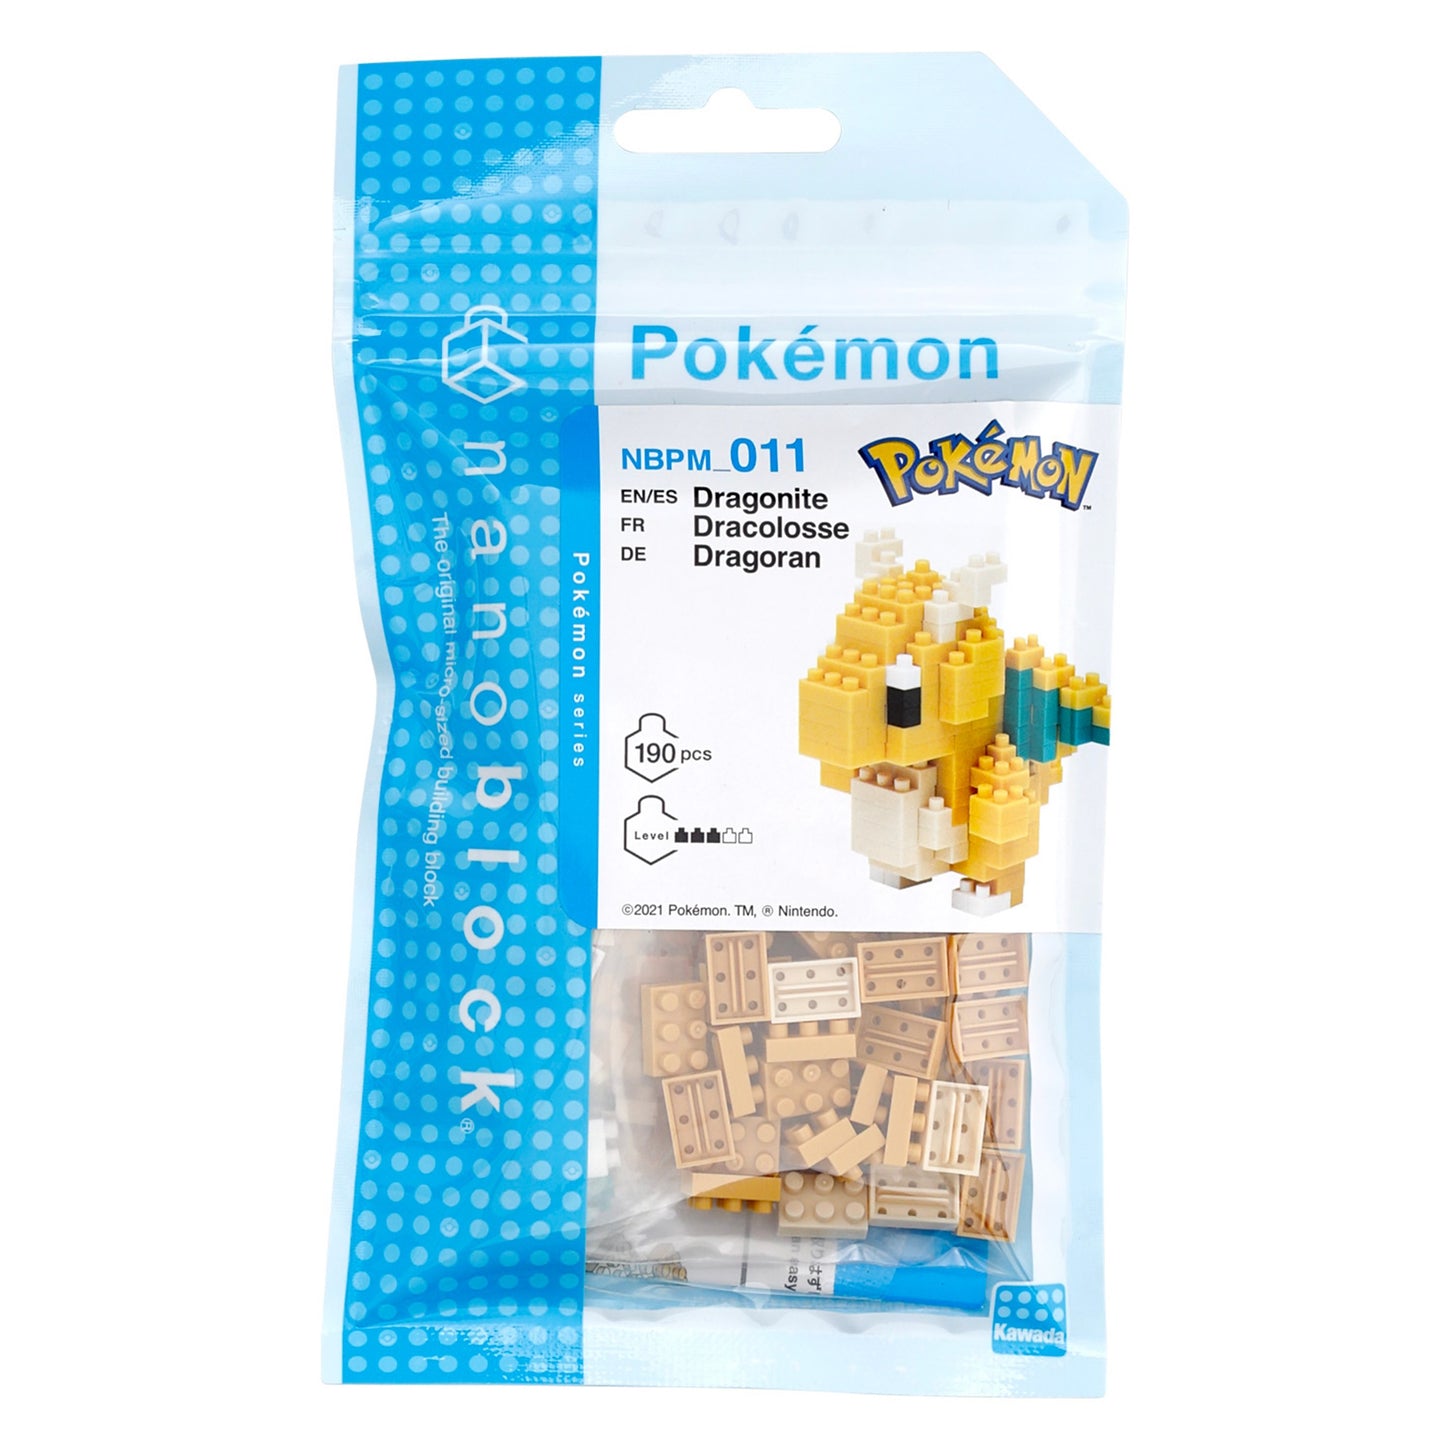 Pokémon Nanoblock - Build your own Pokémon - Dragonite